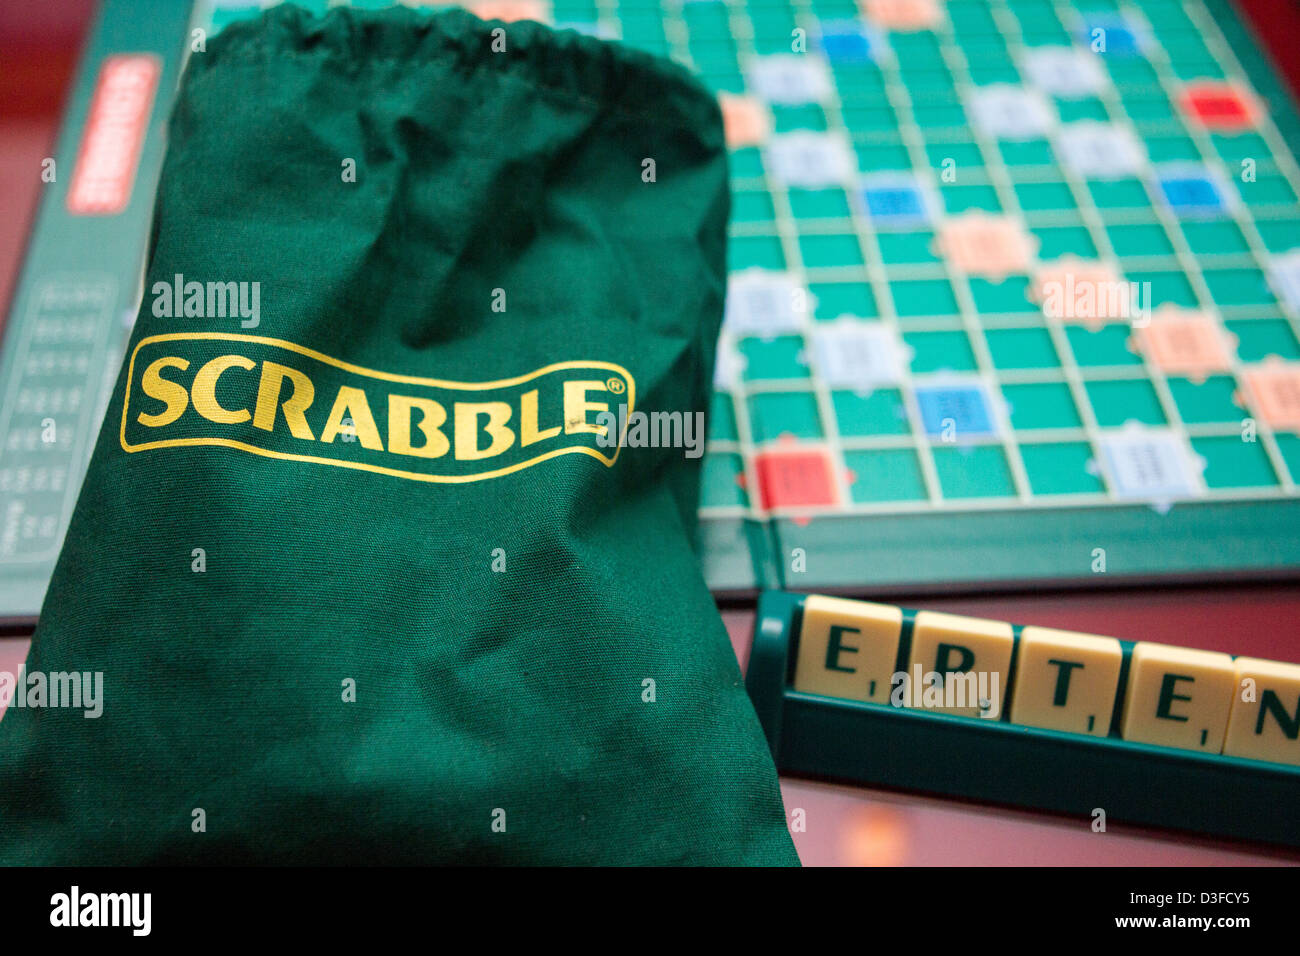 Scrabble board Stock Photo